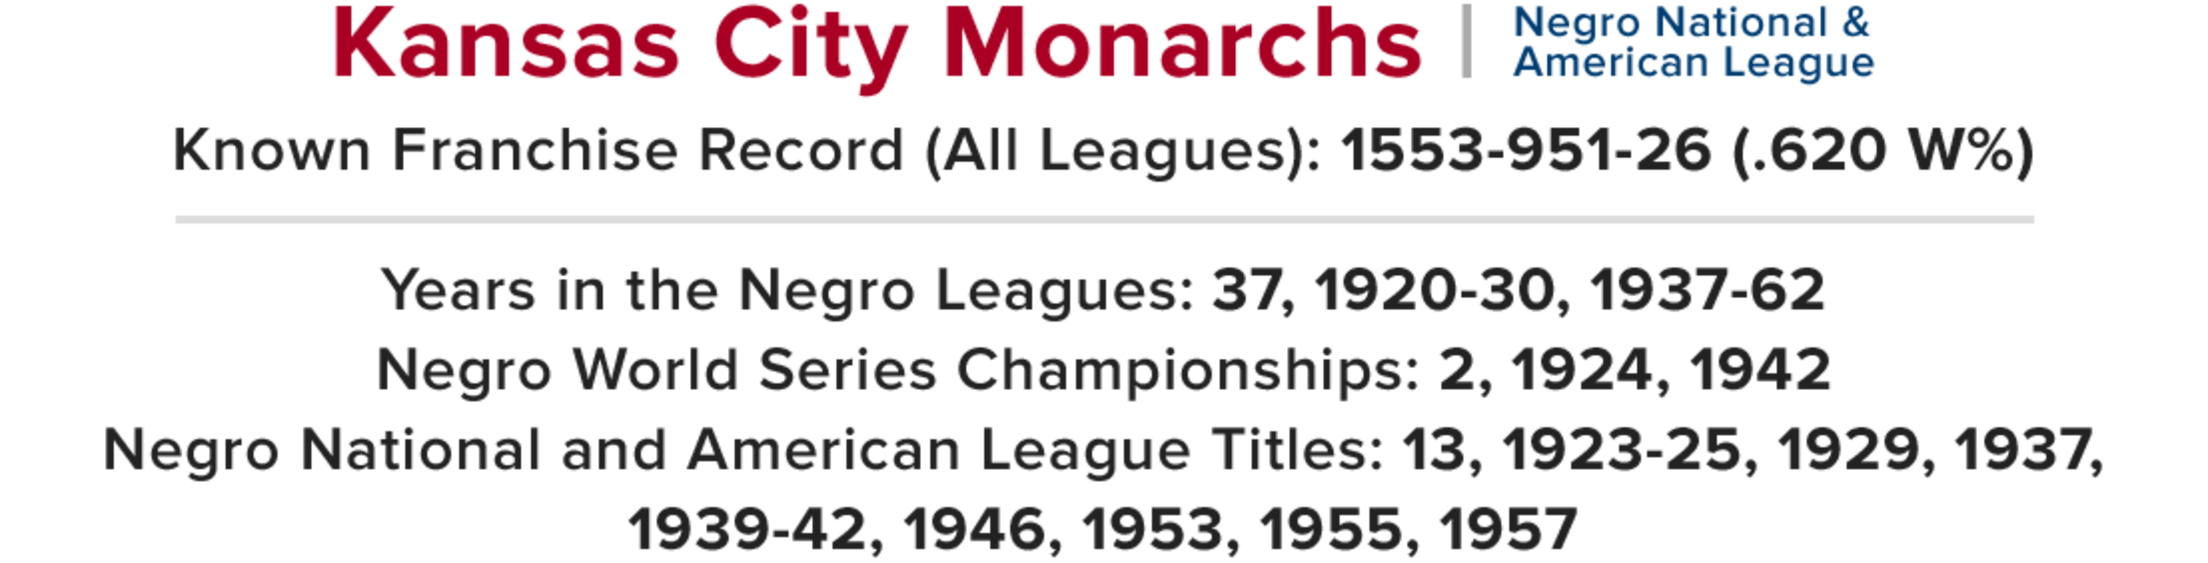 Negro League Kansas City Monarchs Photos et images de collection